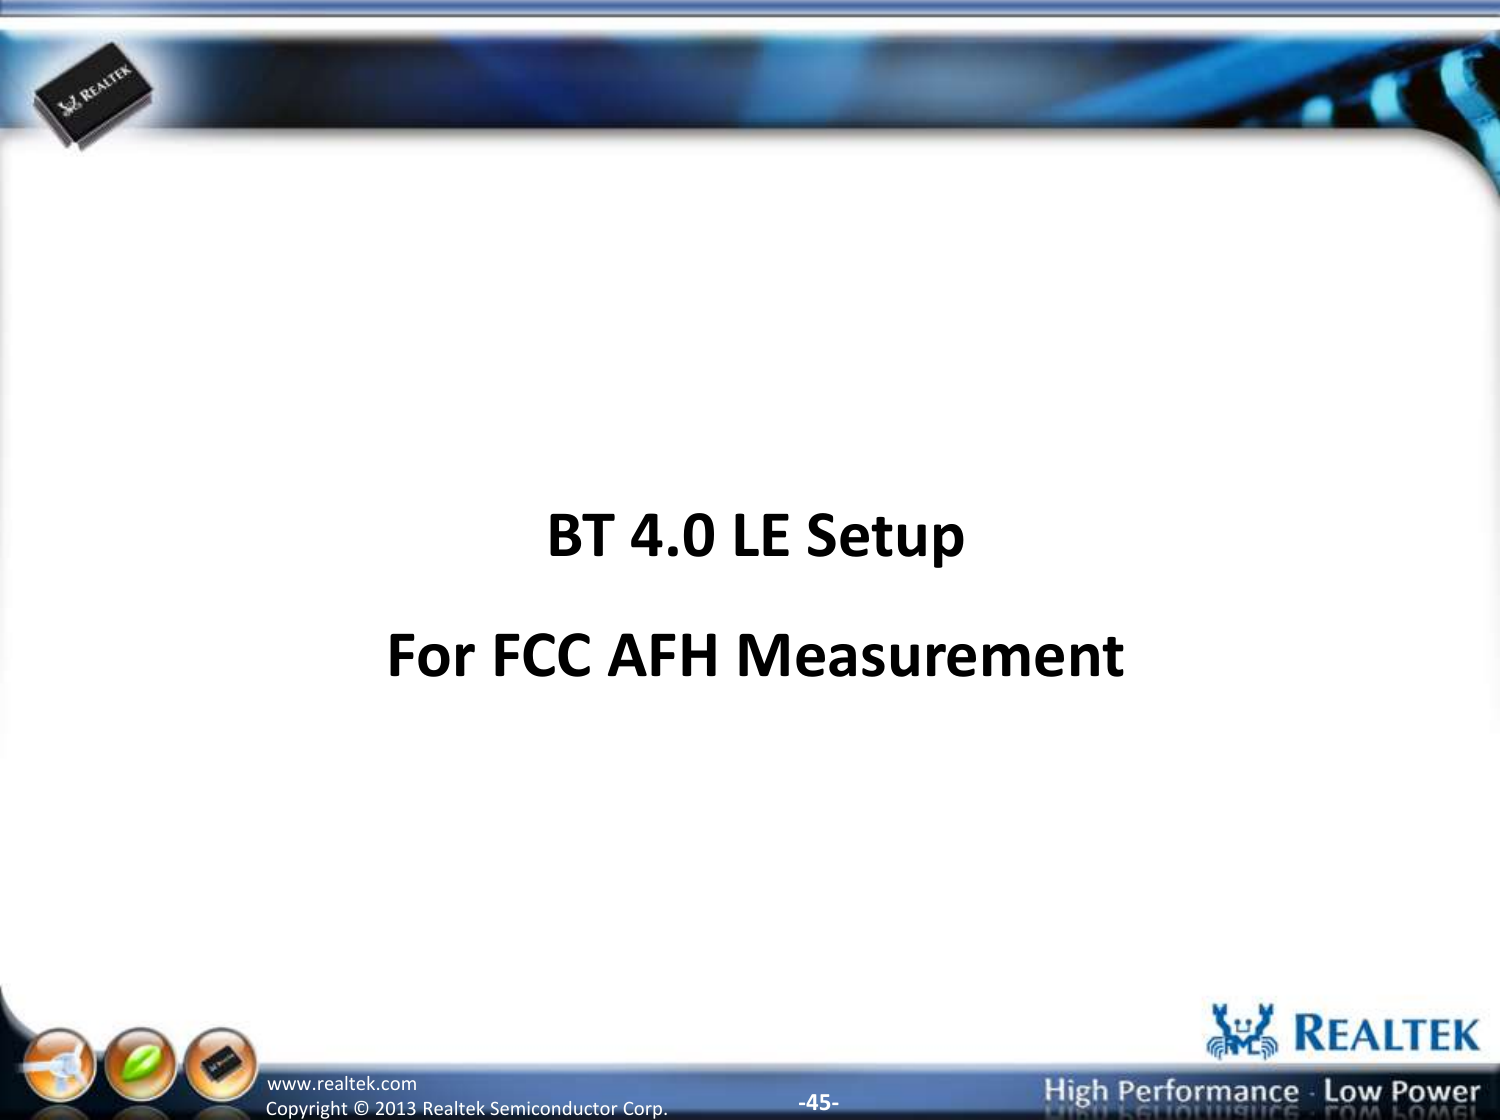 -45- Copyright ©  2013 Realtek Semiconductor Corp. www.realtek.com BT 4.0 LE Setup For FCC AFH Measurement 